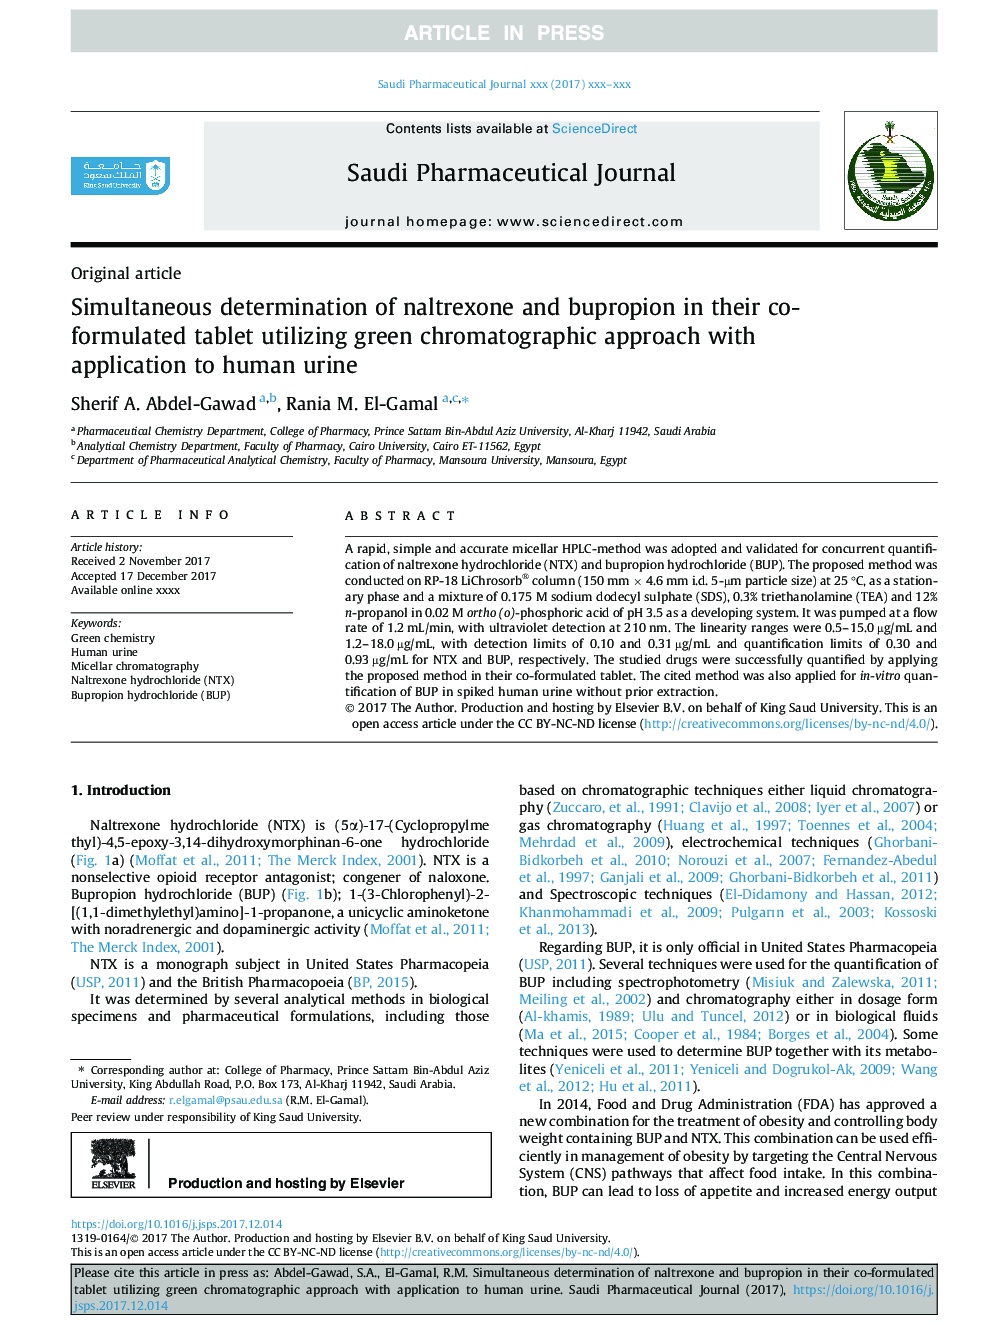 تعیین همزمان نالترکسون و بوپروپیون در قرص ترکیبی آنها با استفاده از روش کروماتوگرافی سبز با استفاده از ادرار در انسان 